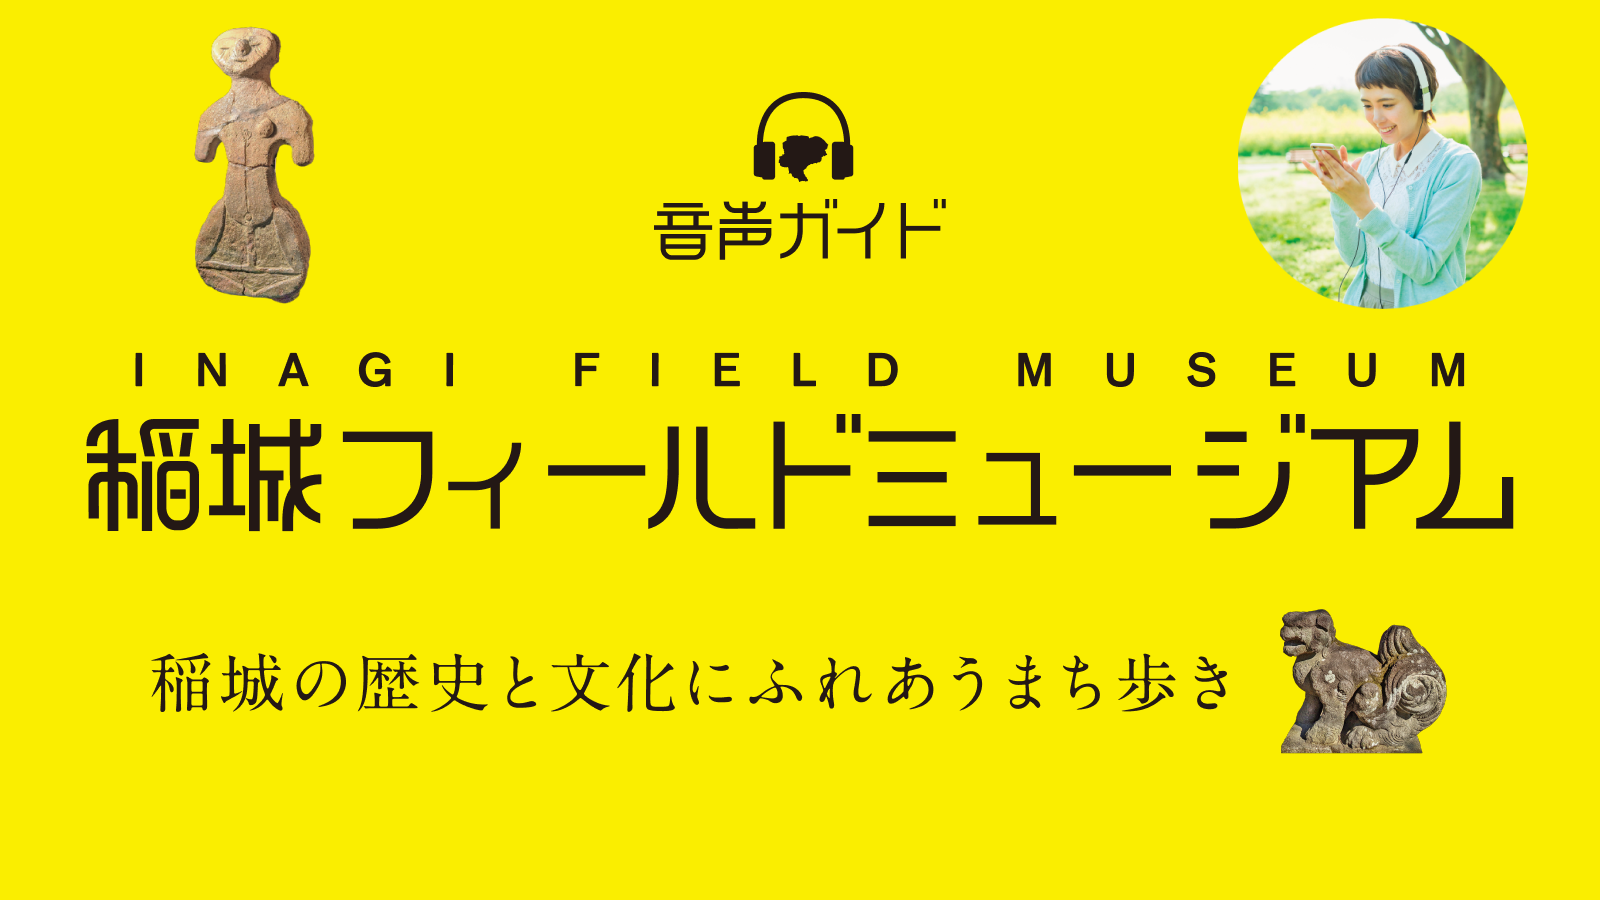 駒沢女子大学で観光学を学ぶ学生が音声ガイドアプリ「稲城フィールドミュージアム」を企画制作 -- 稲城市観光協会および株式会社MEBUKUとの産官学連携活動